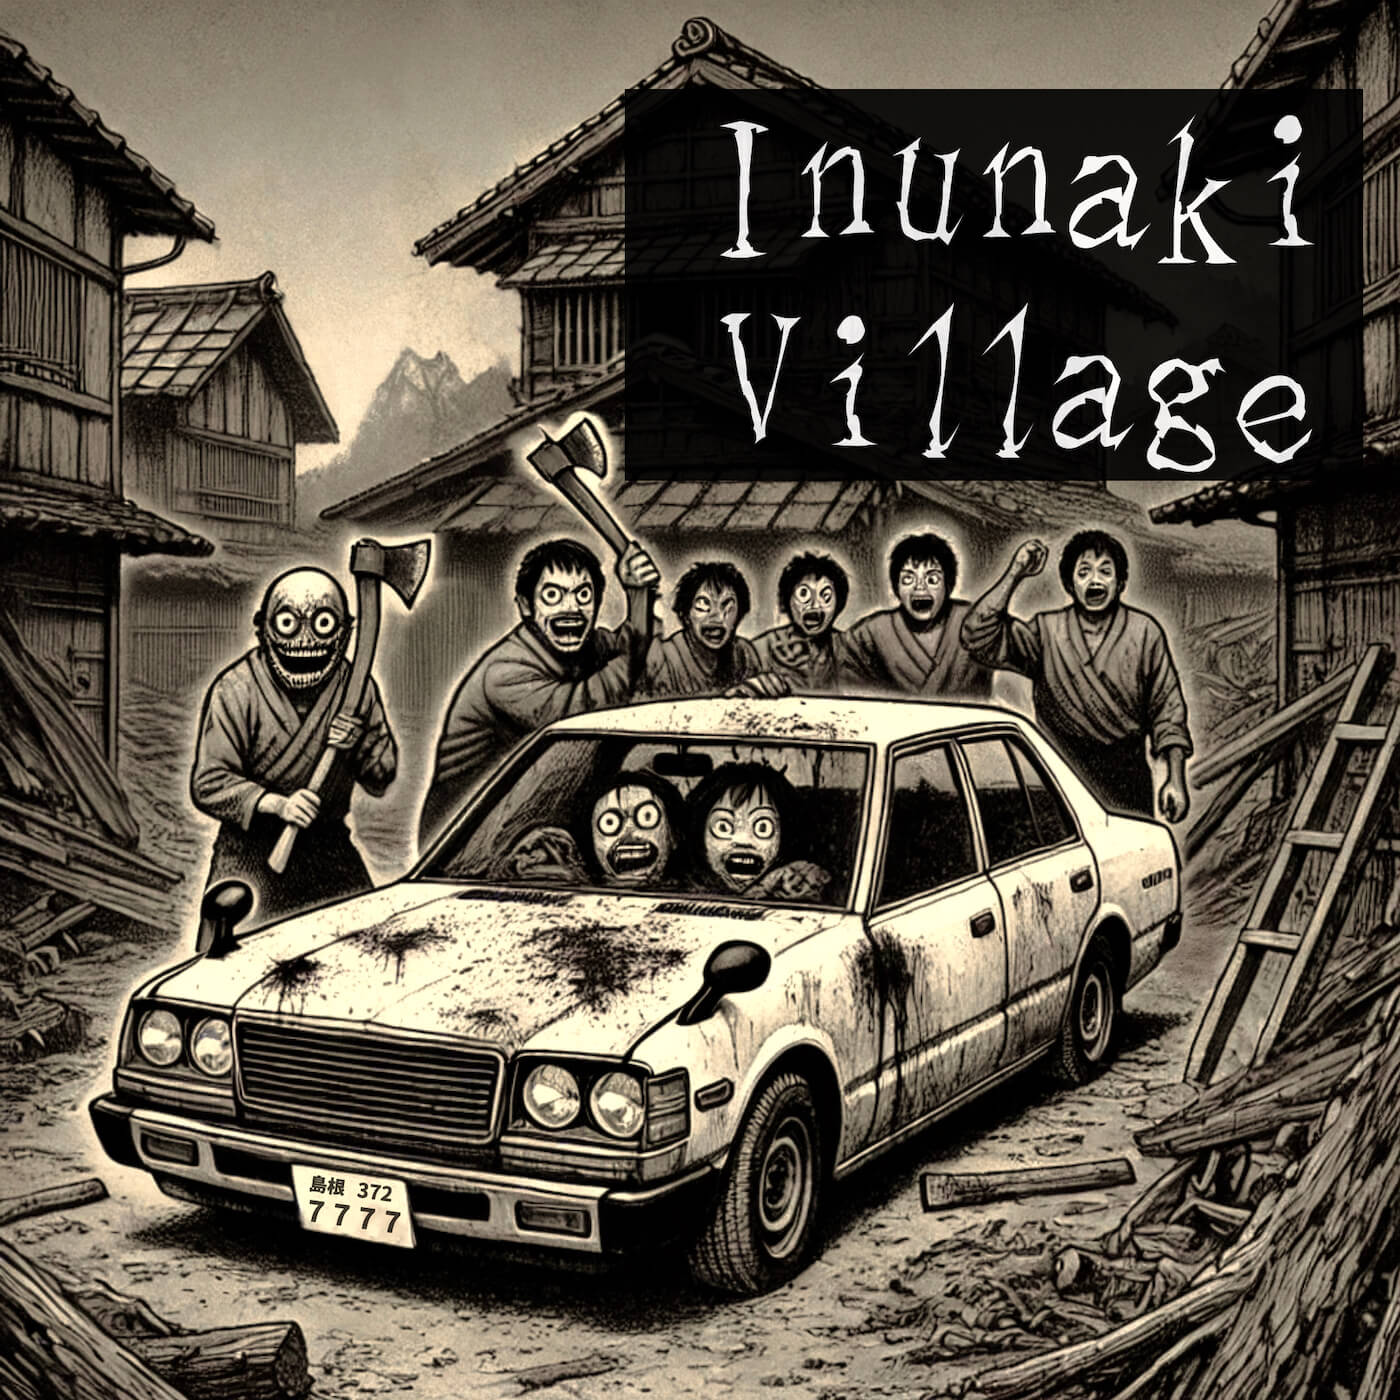 inunaki_tunnel_village_urban_legend